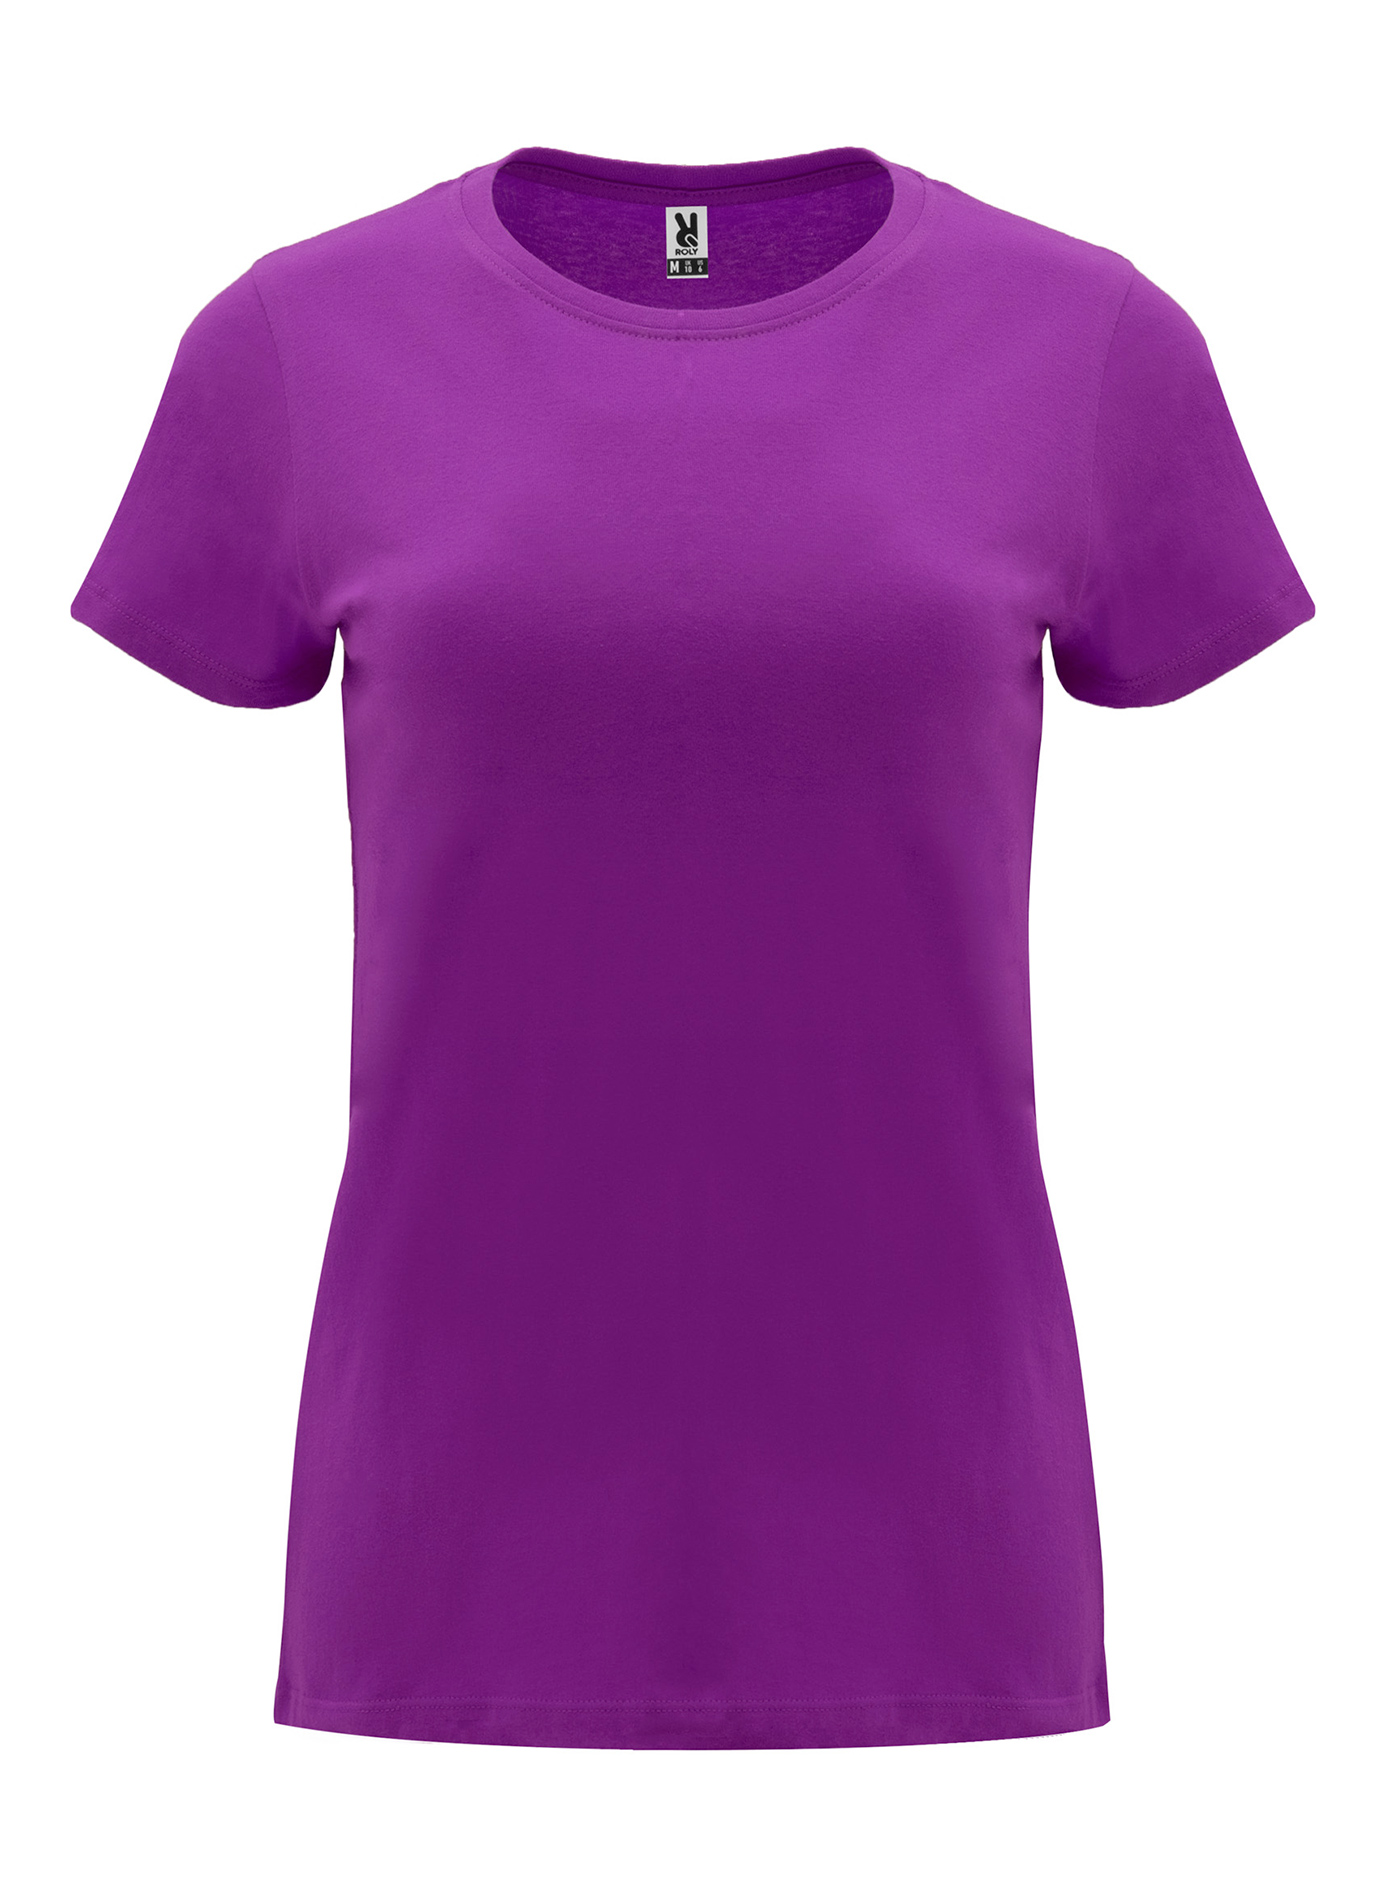 Dámské tričko Capri - fialová XL